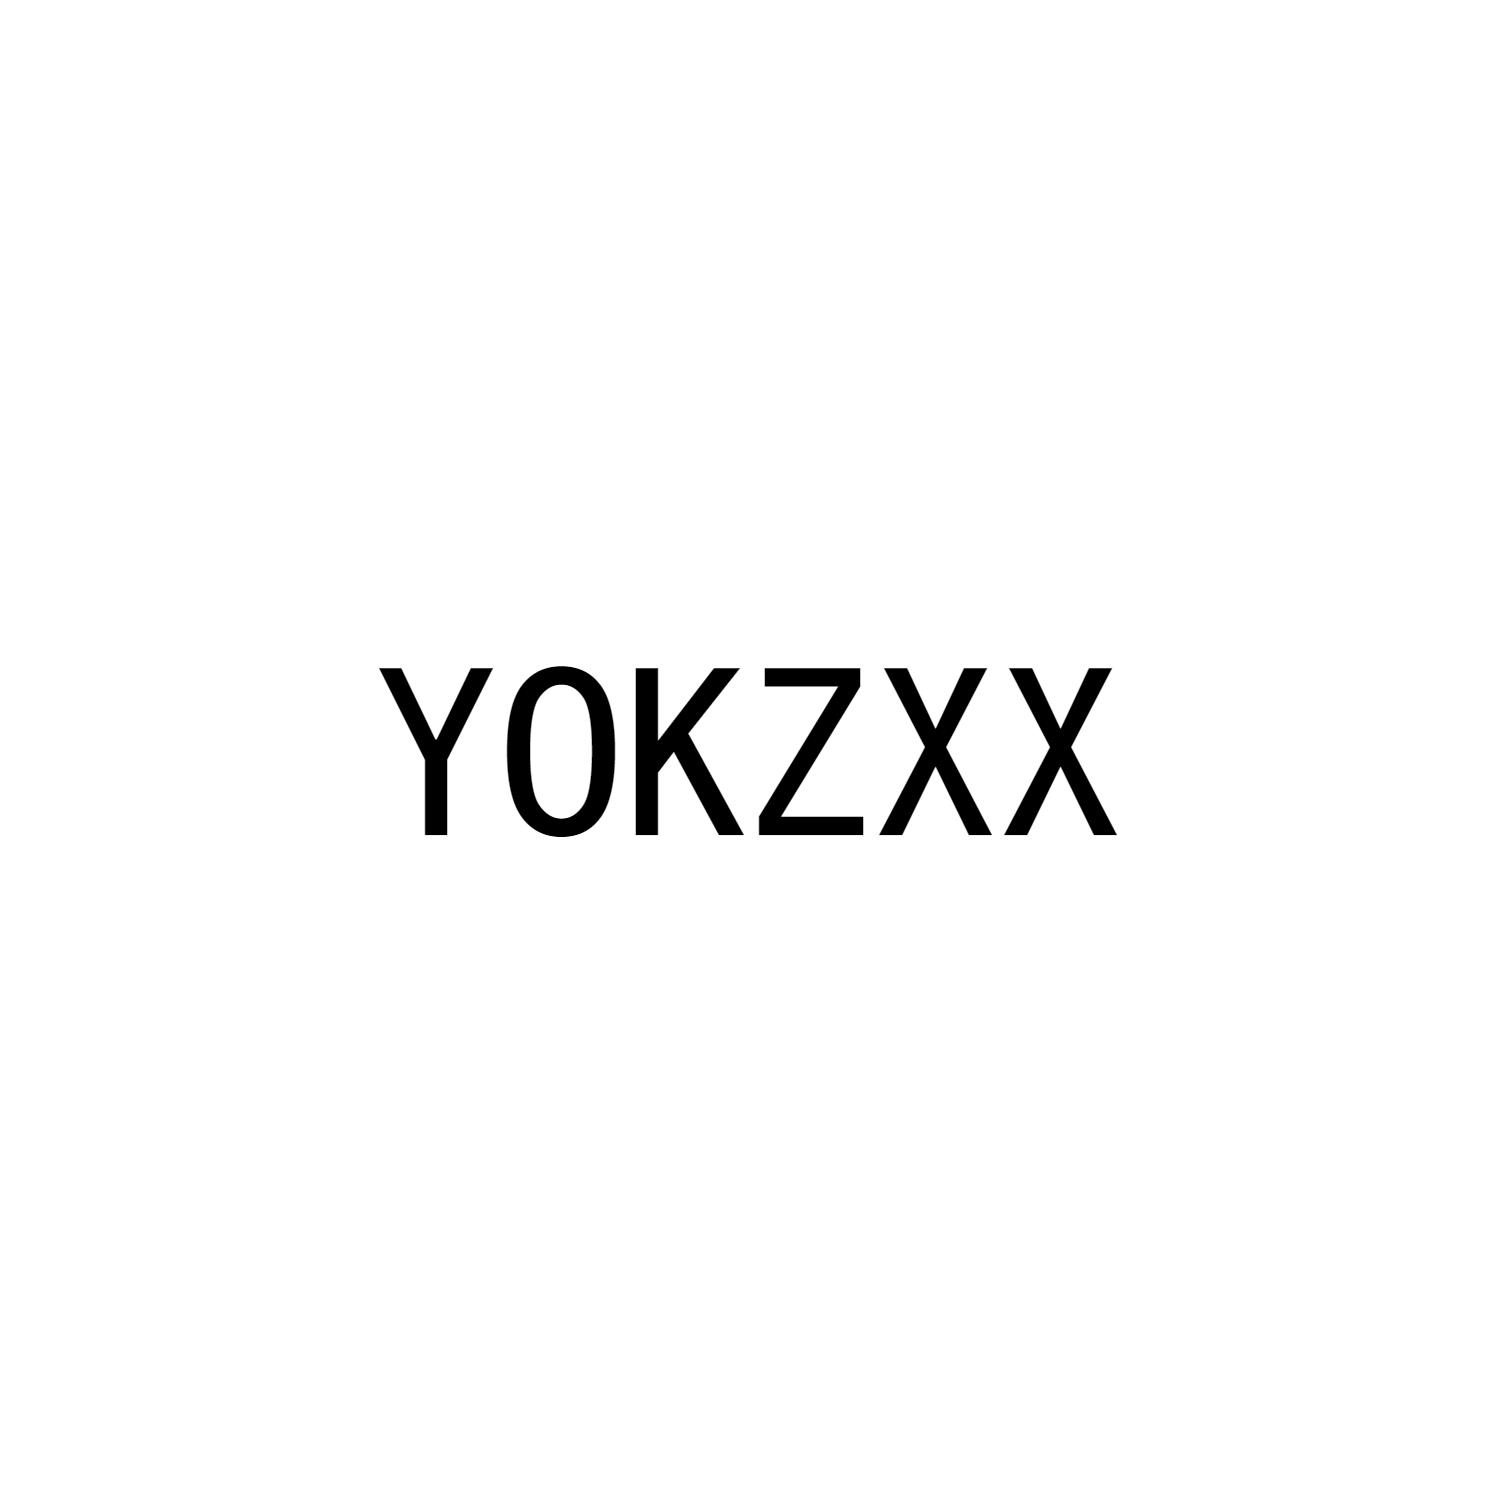 YOKZXX